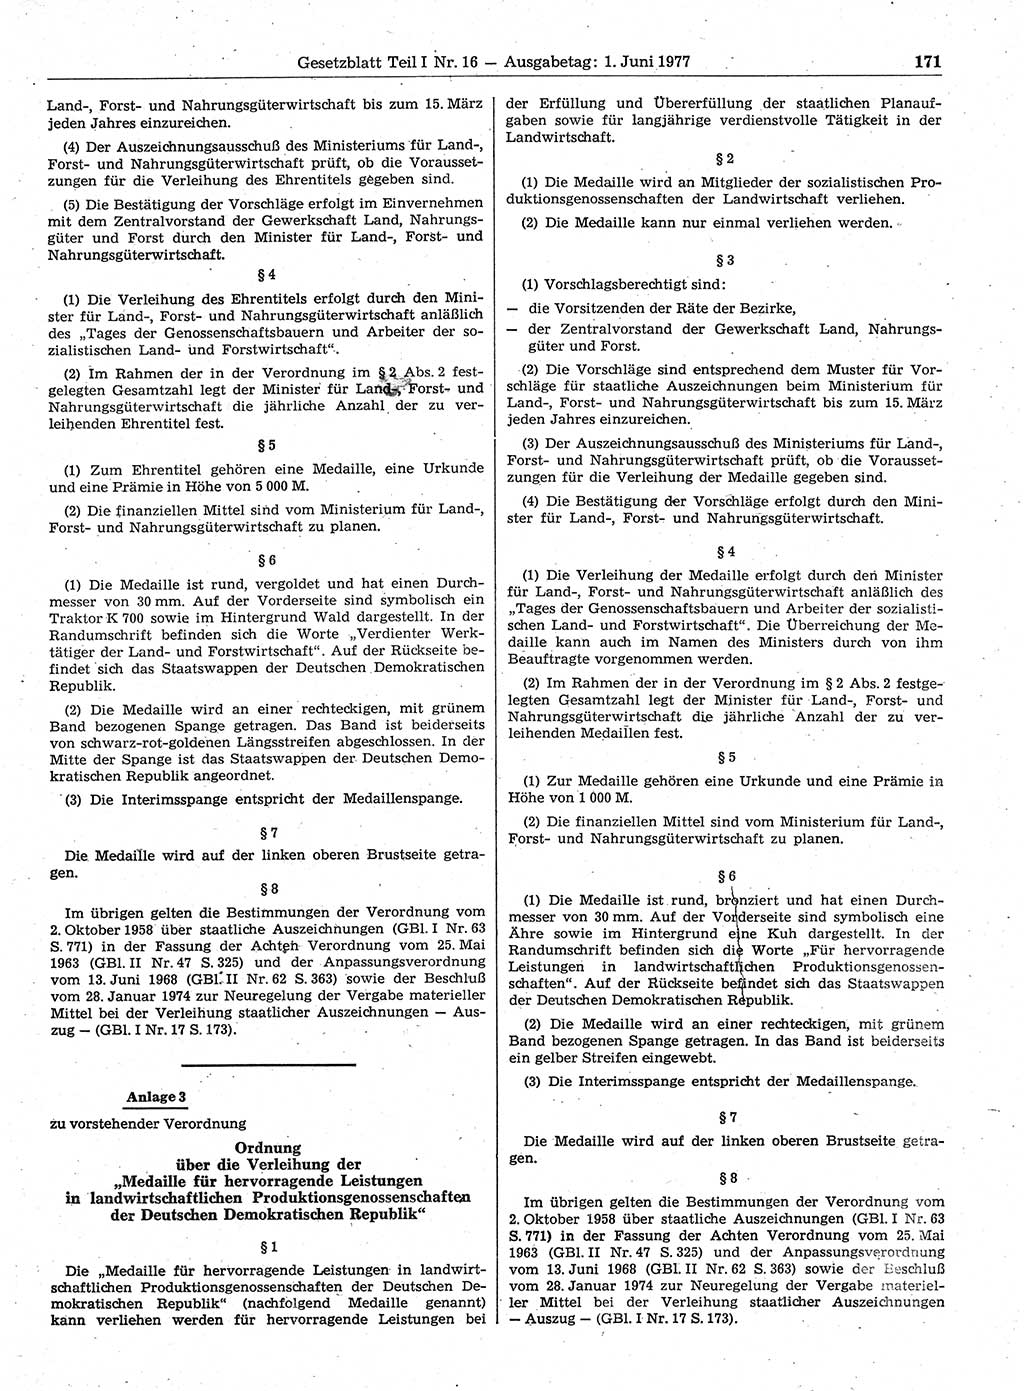 Gesetzblatt (GBl.) der Deutschen Demokratischen Republik (DDR) Teil Ⅰ 1977, Seite 171 (GBl. DDR Ⅰ 1977, S. 171)